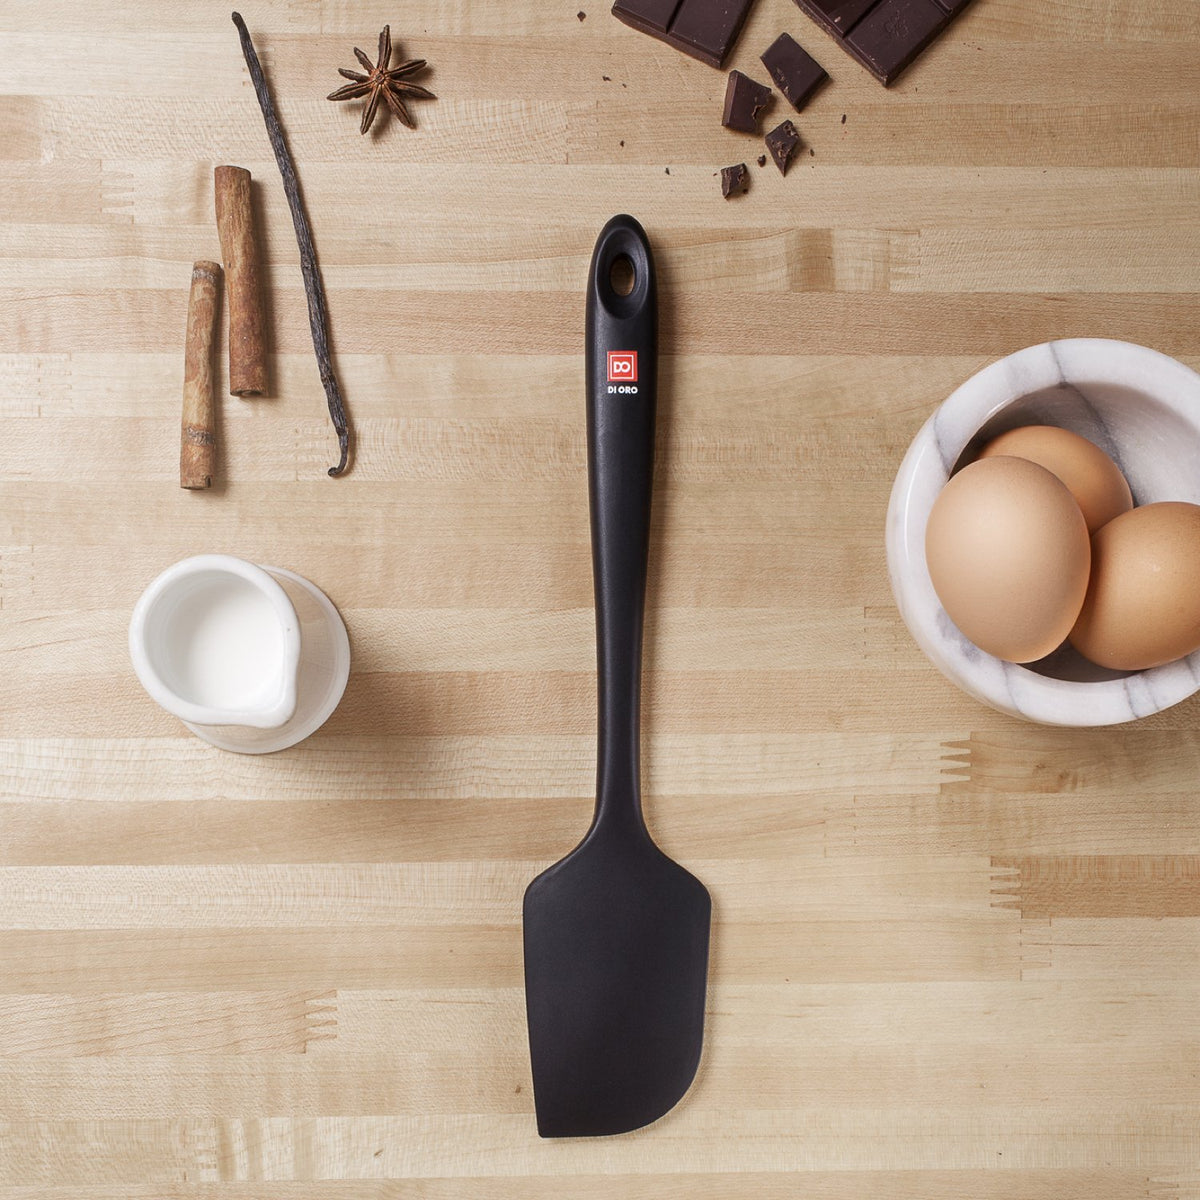 di Oro Living di oro silicone spatula set - rubber kitchen spatulas for  baking, cooking, & mixing 